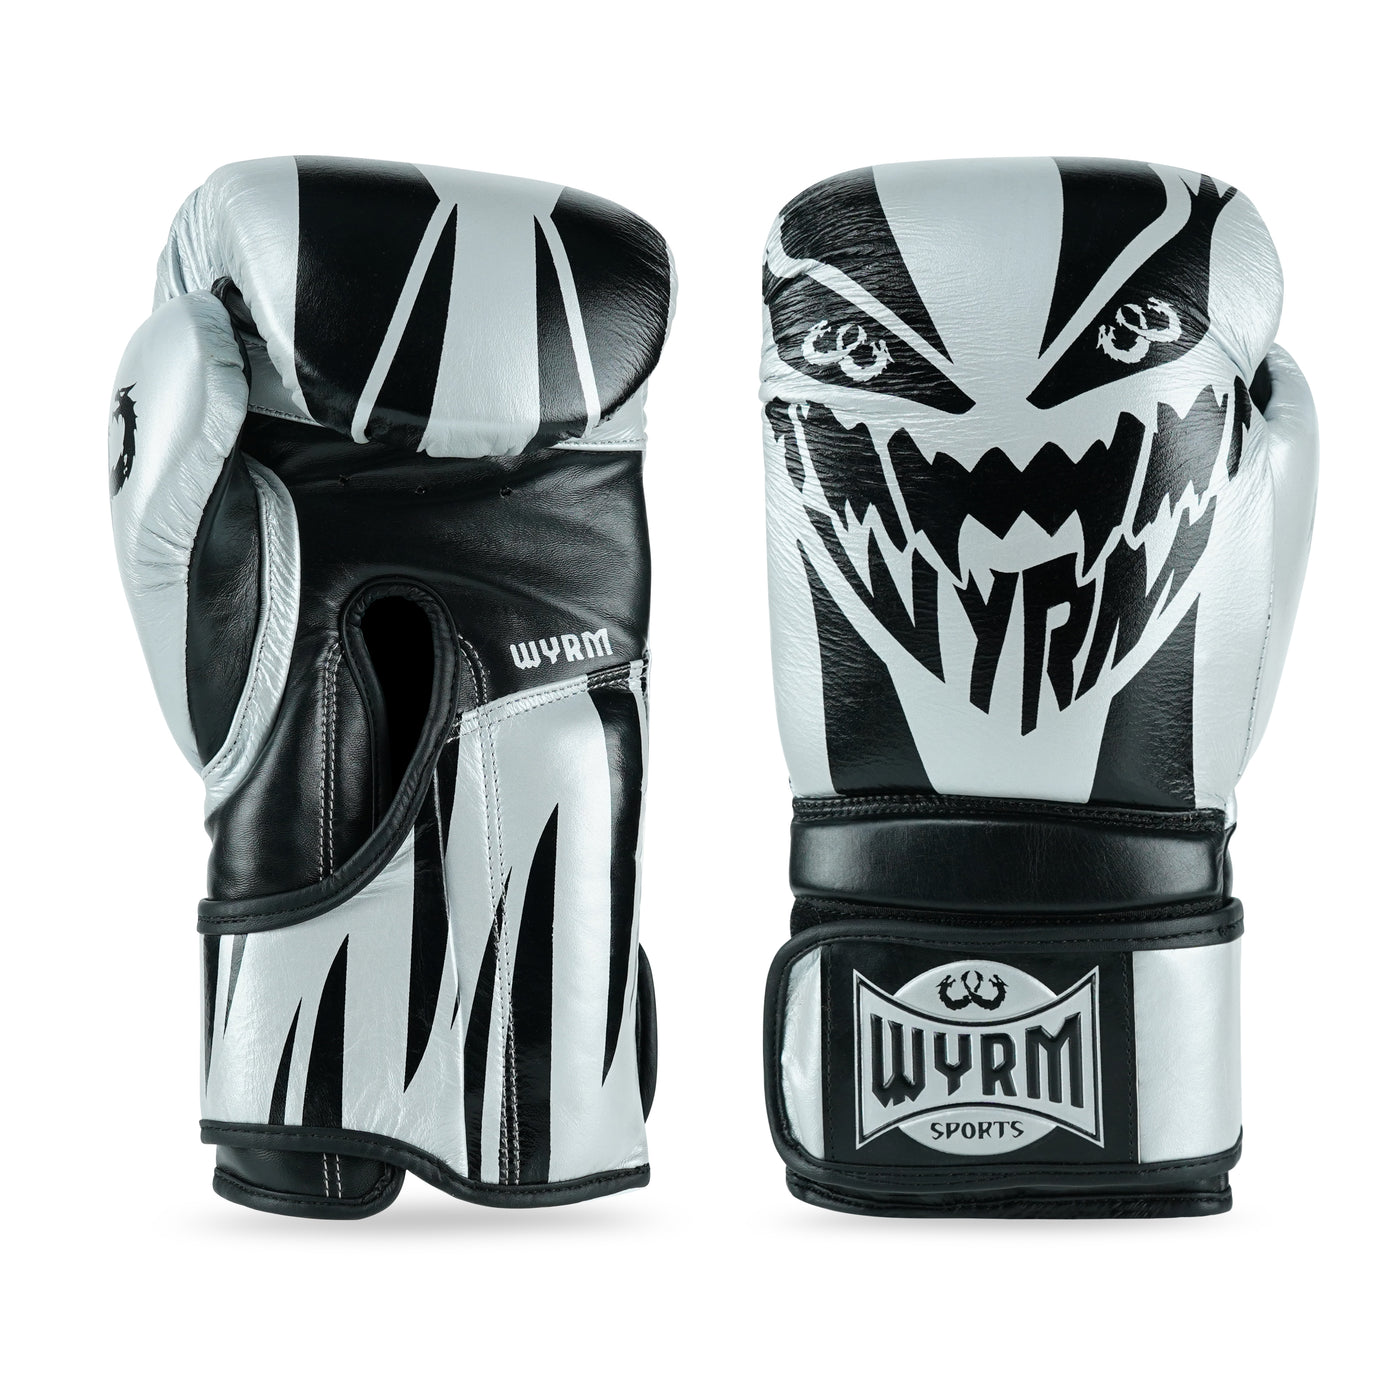 Devourer Black/Silver Genuine Leather Boxing Gloves